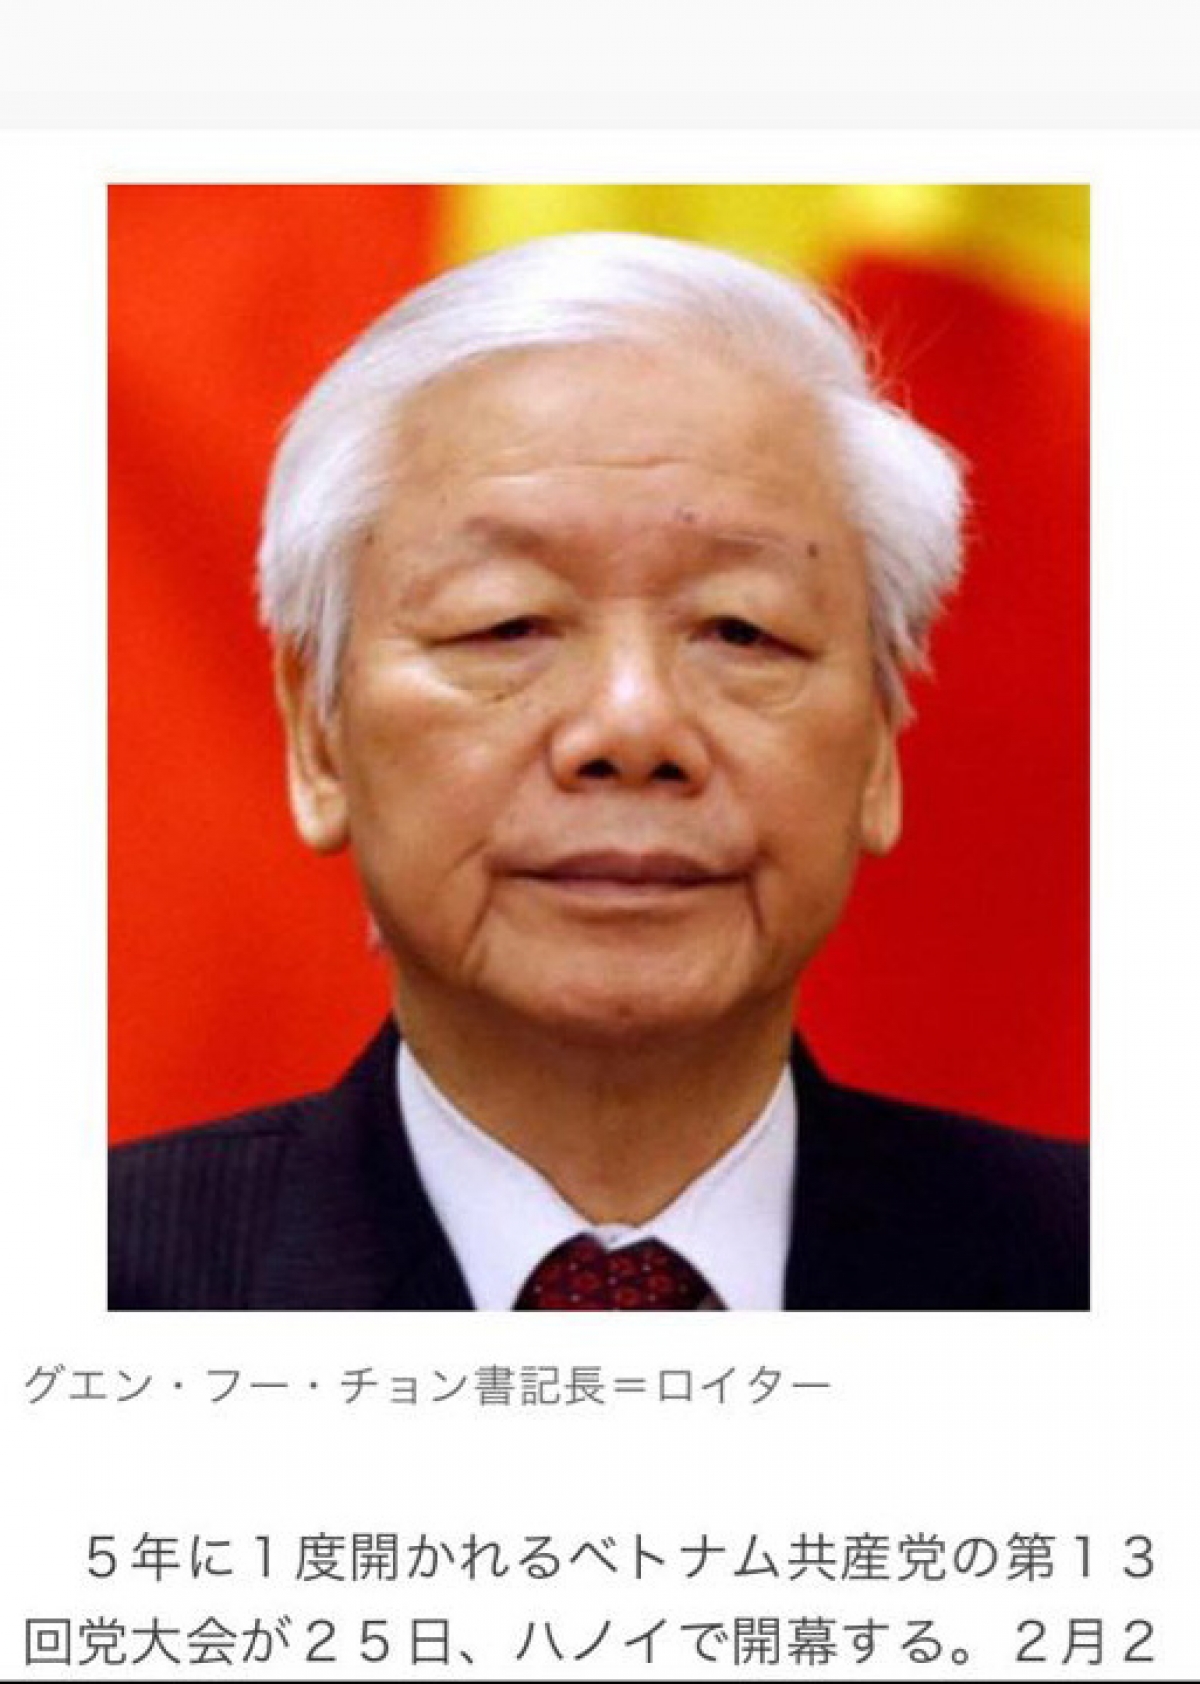 Hình ảnh Tổng Bí thư, Chủ tịch nước Nguyễn Phú Trọng trên truyền thông Nhật Bản 